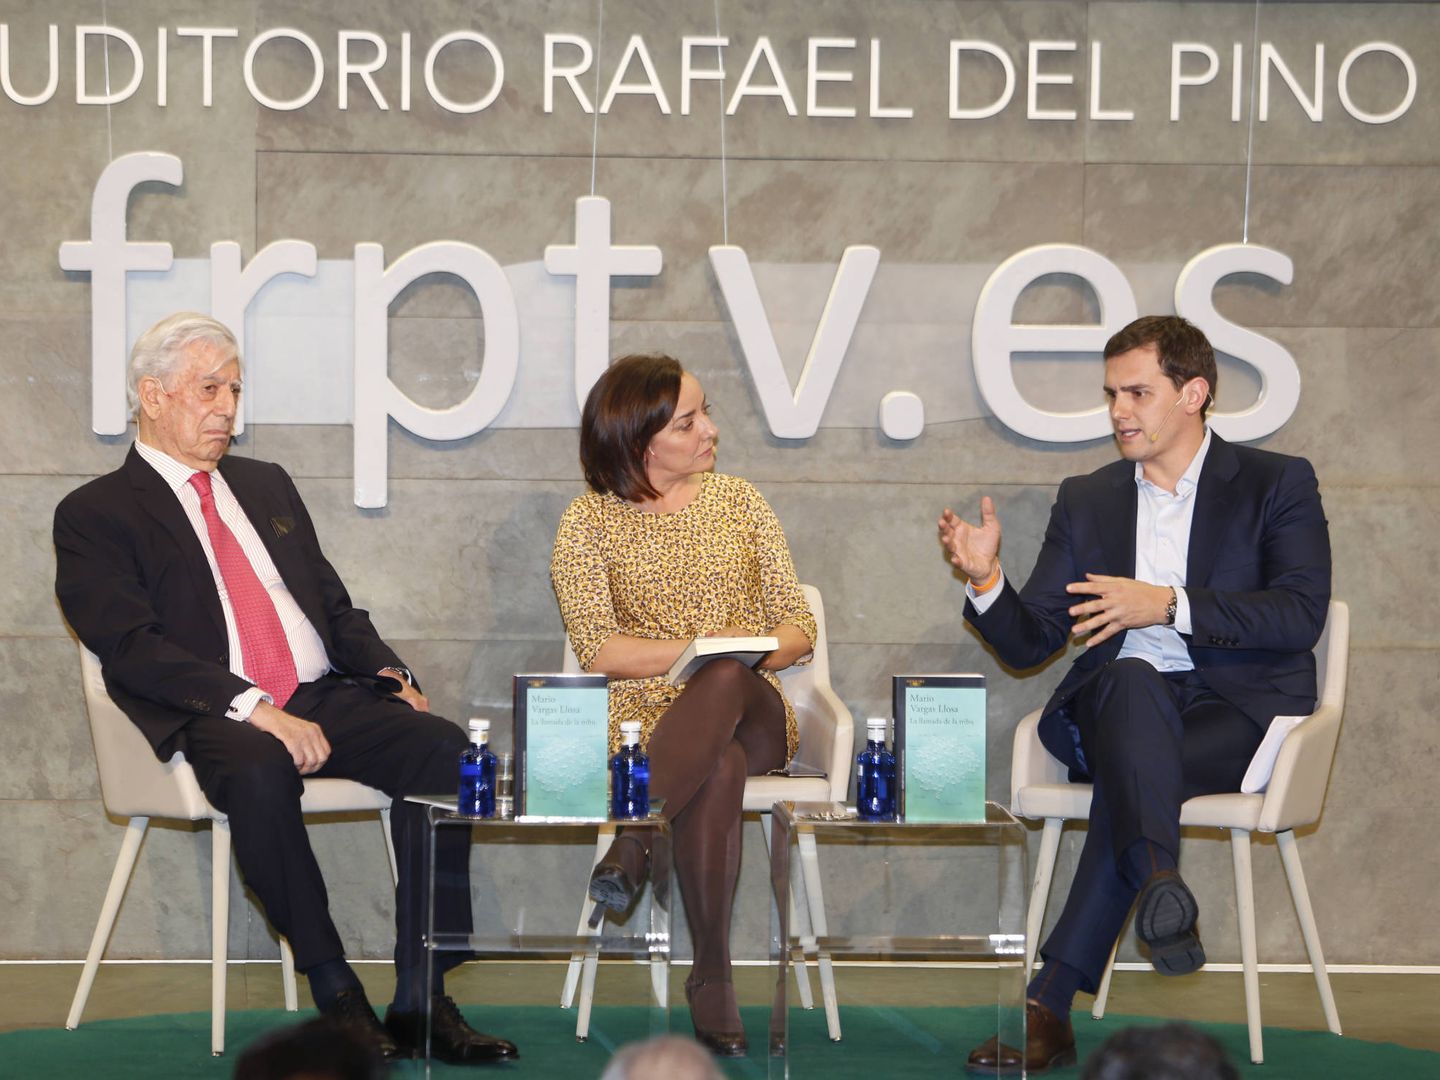 Mario Vargas Llosa, Pepa Bueno y Albert Rivera durante la presentación. (Gtres)